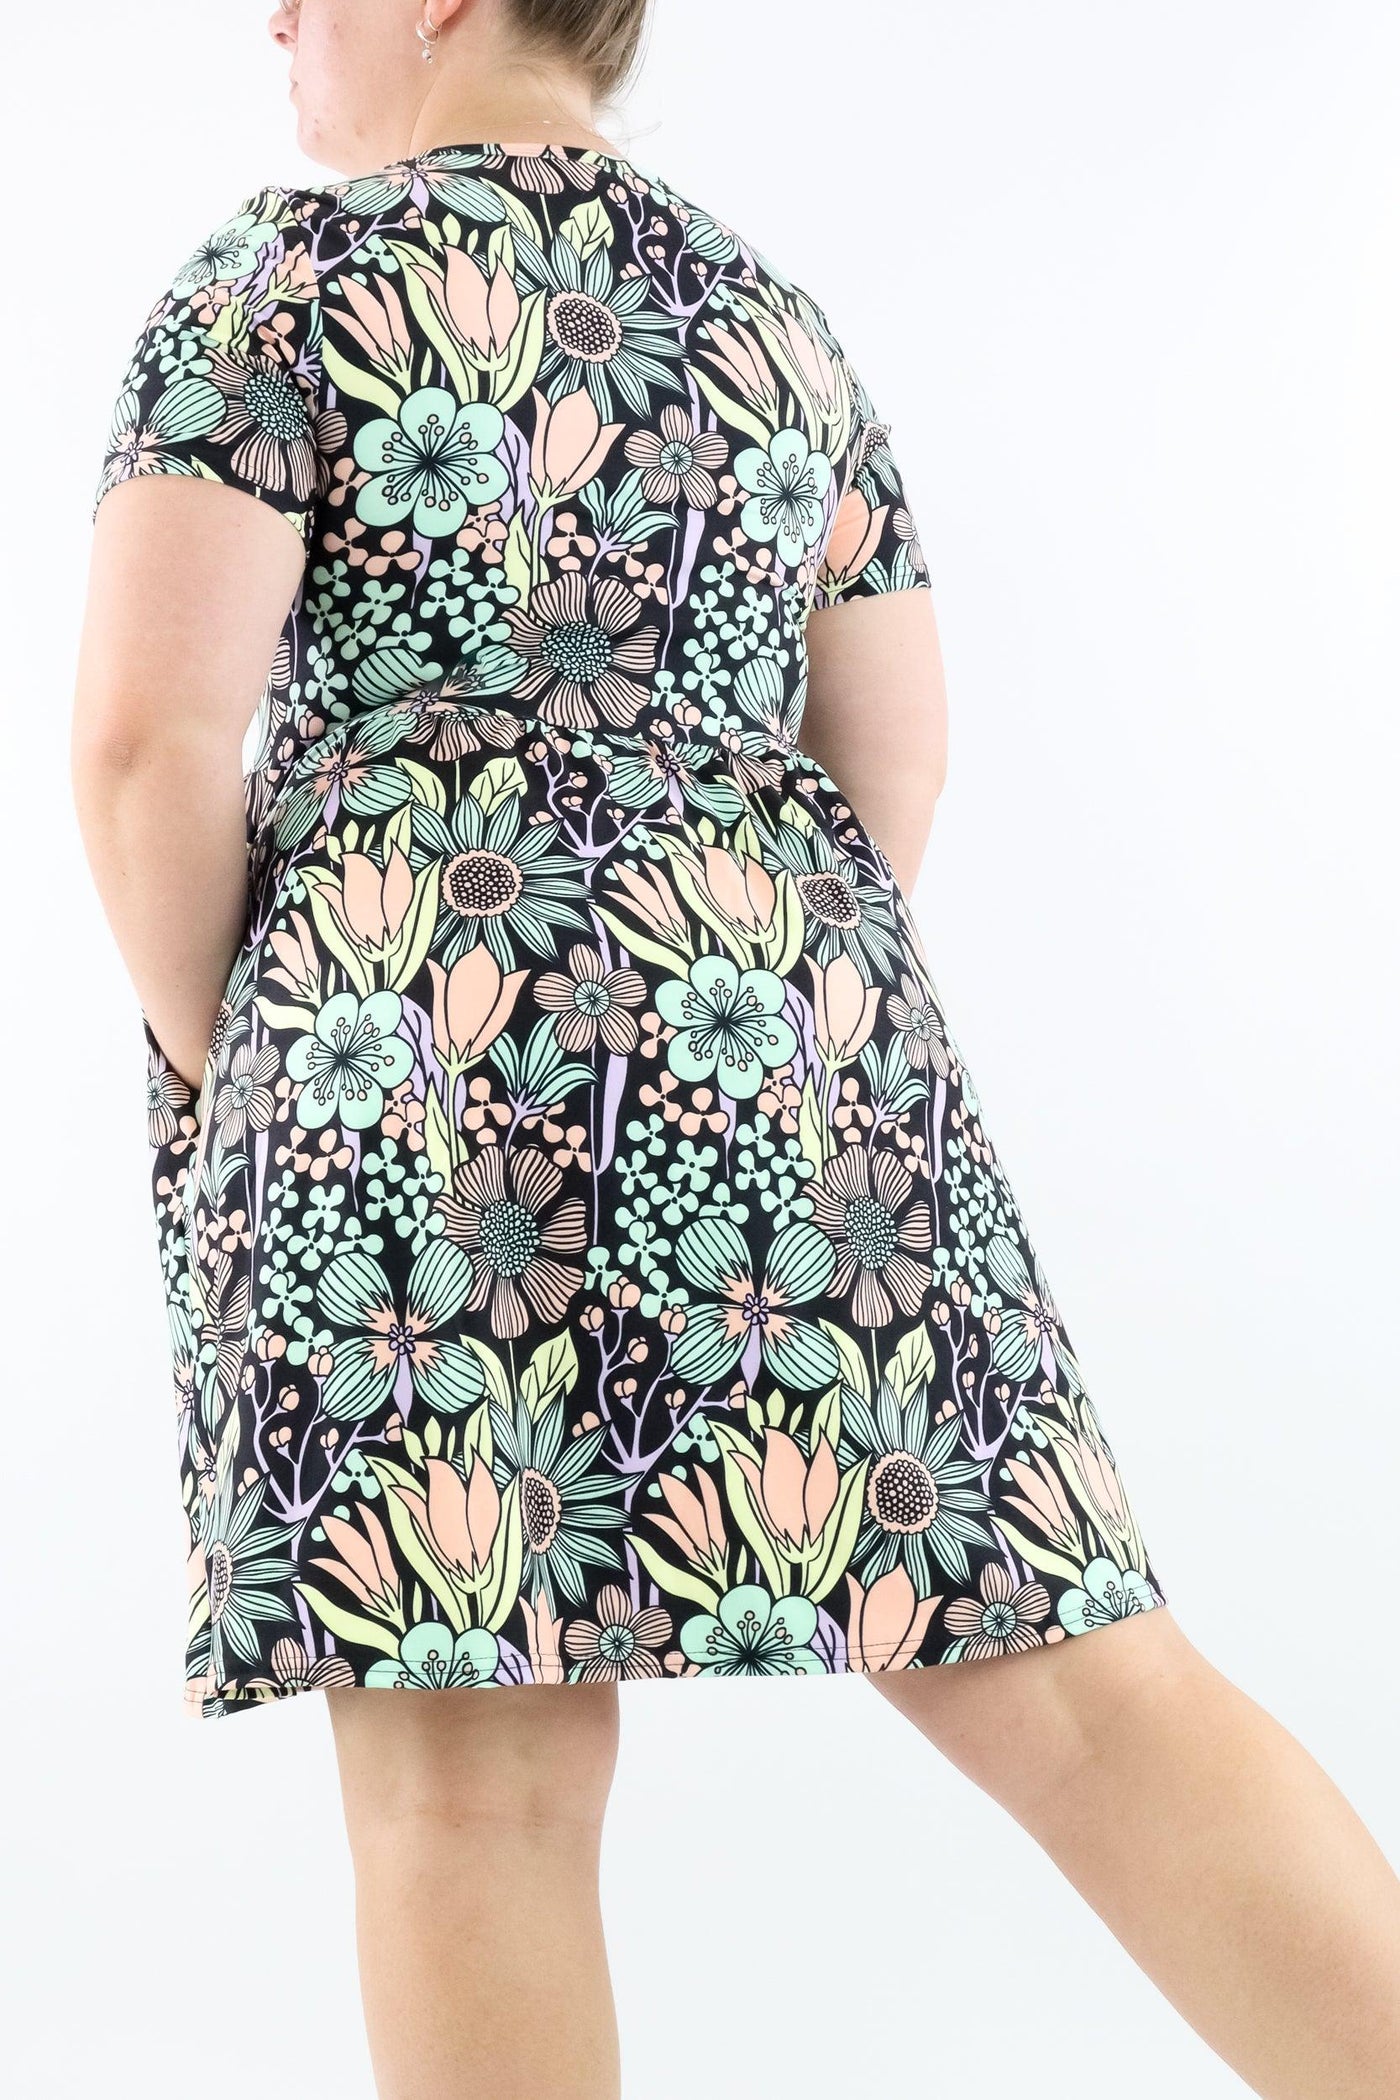 Flower Child - Short Sleeve Skater Dress - Knee Length - Side Pockets